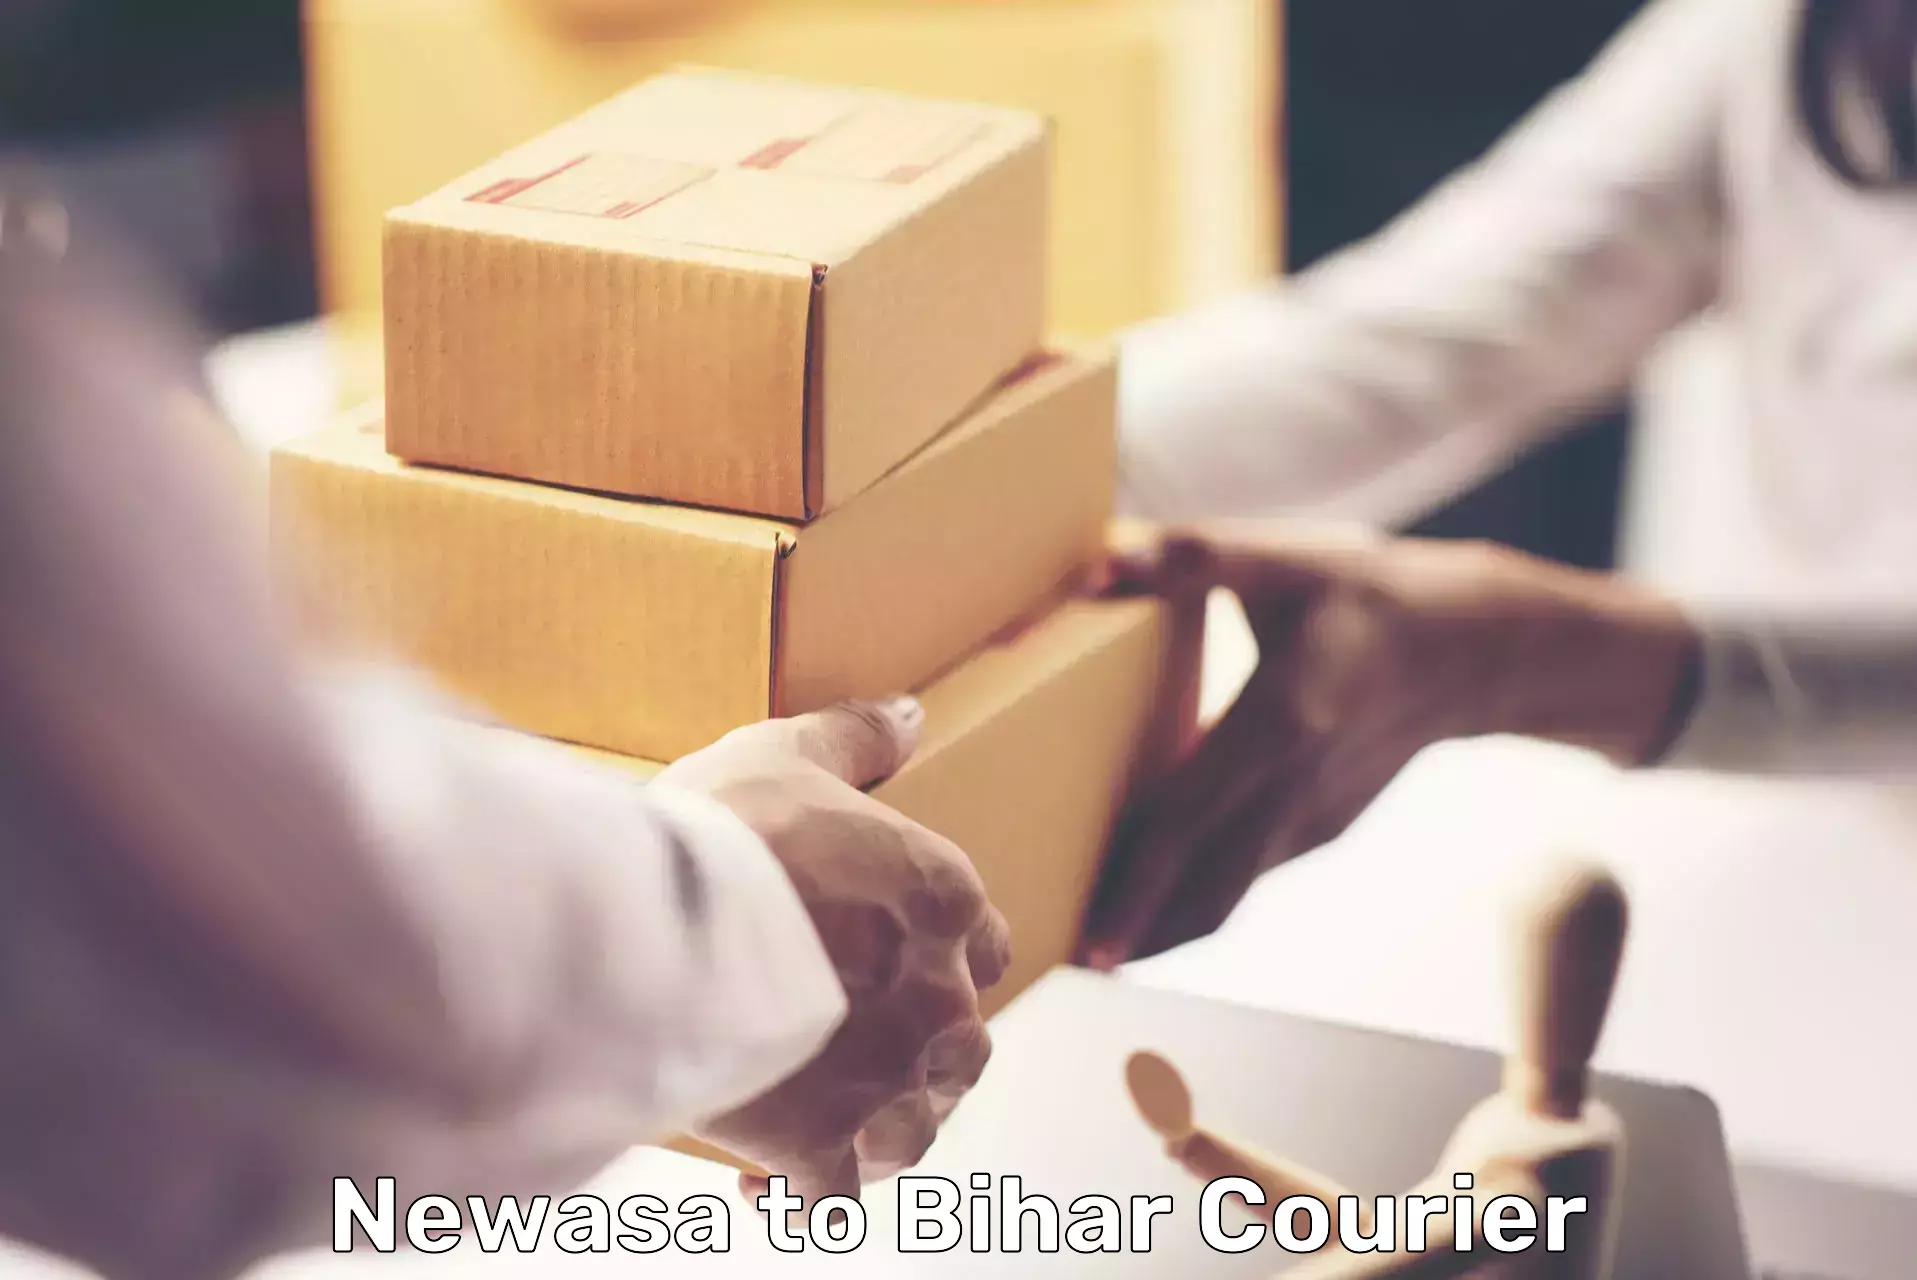 Bulk shipment Newasa to Piro